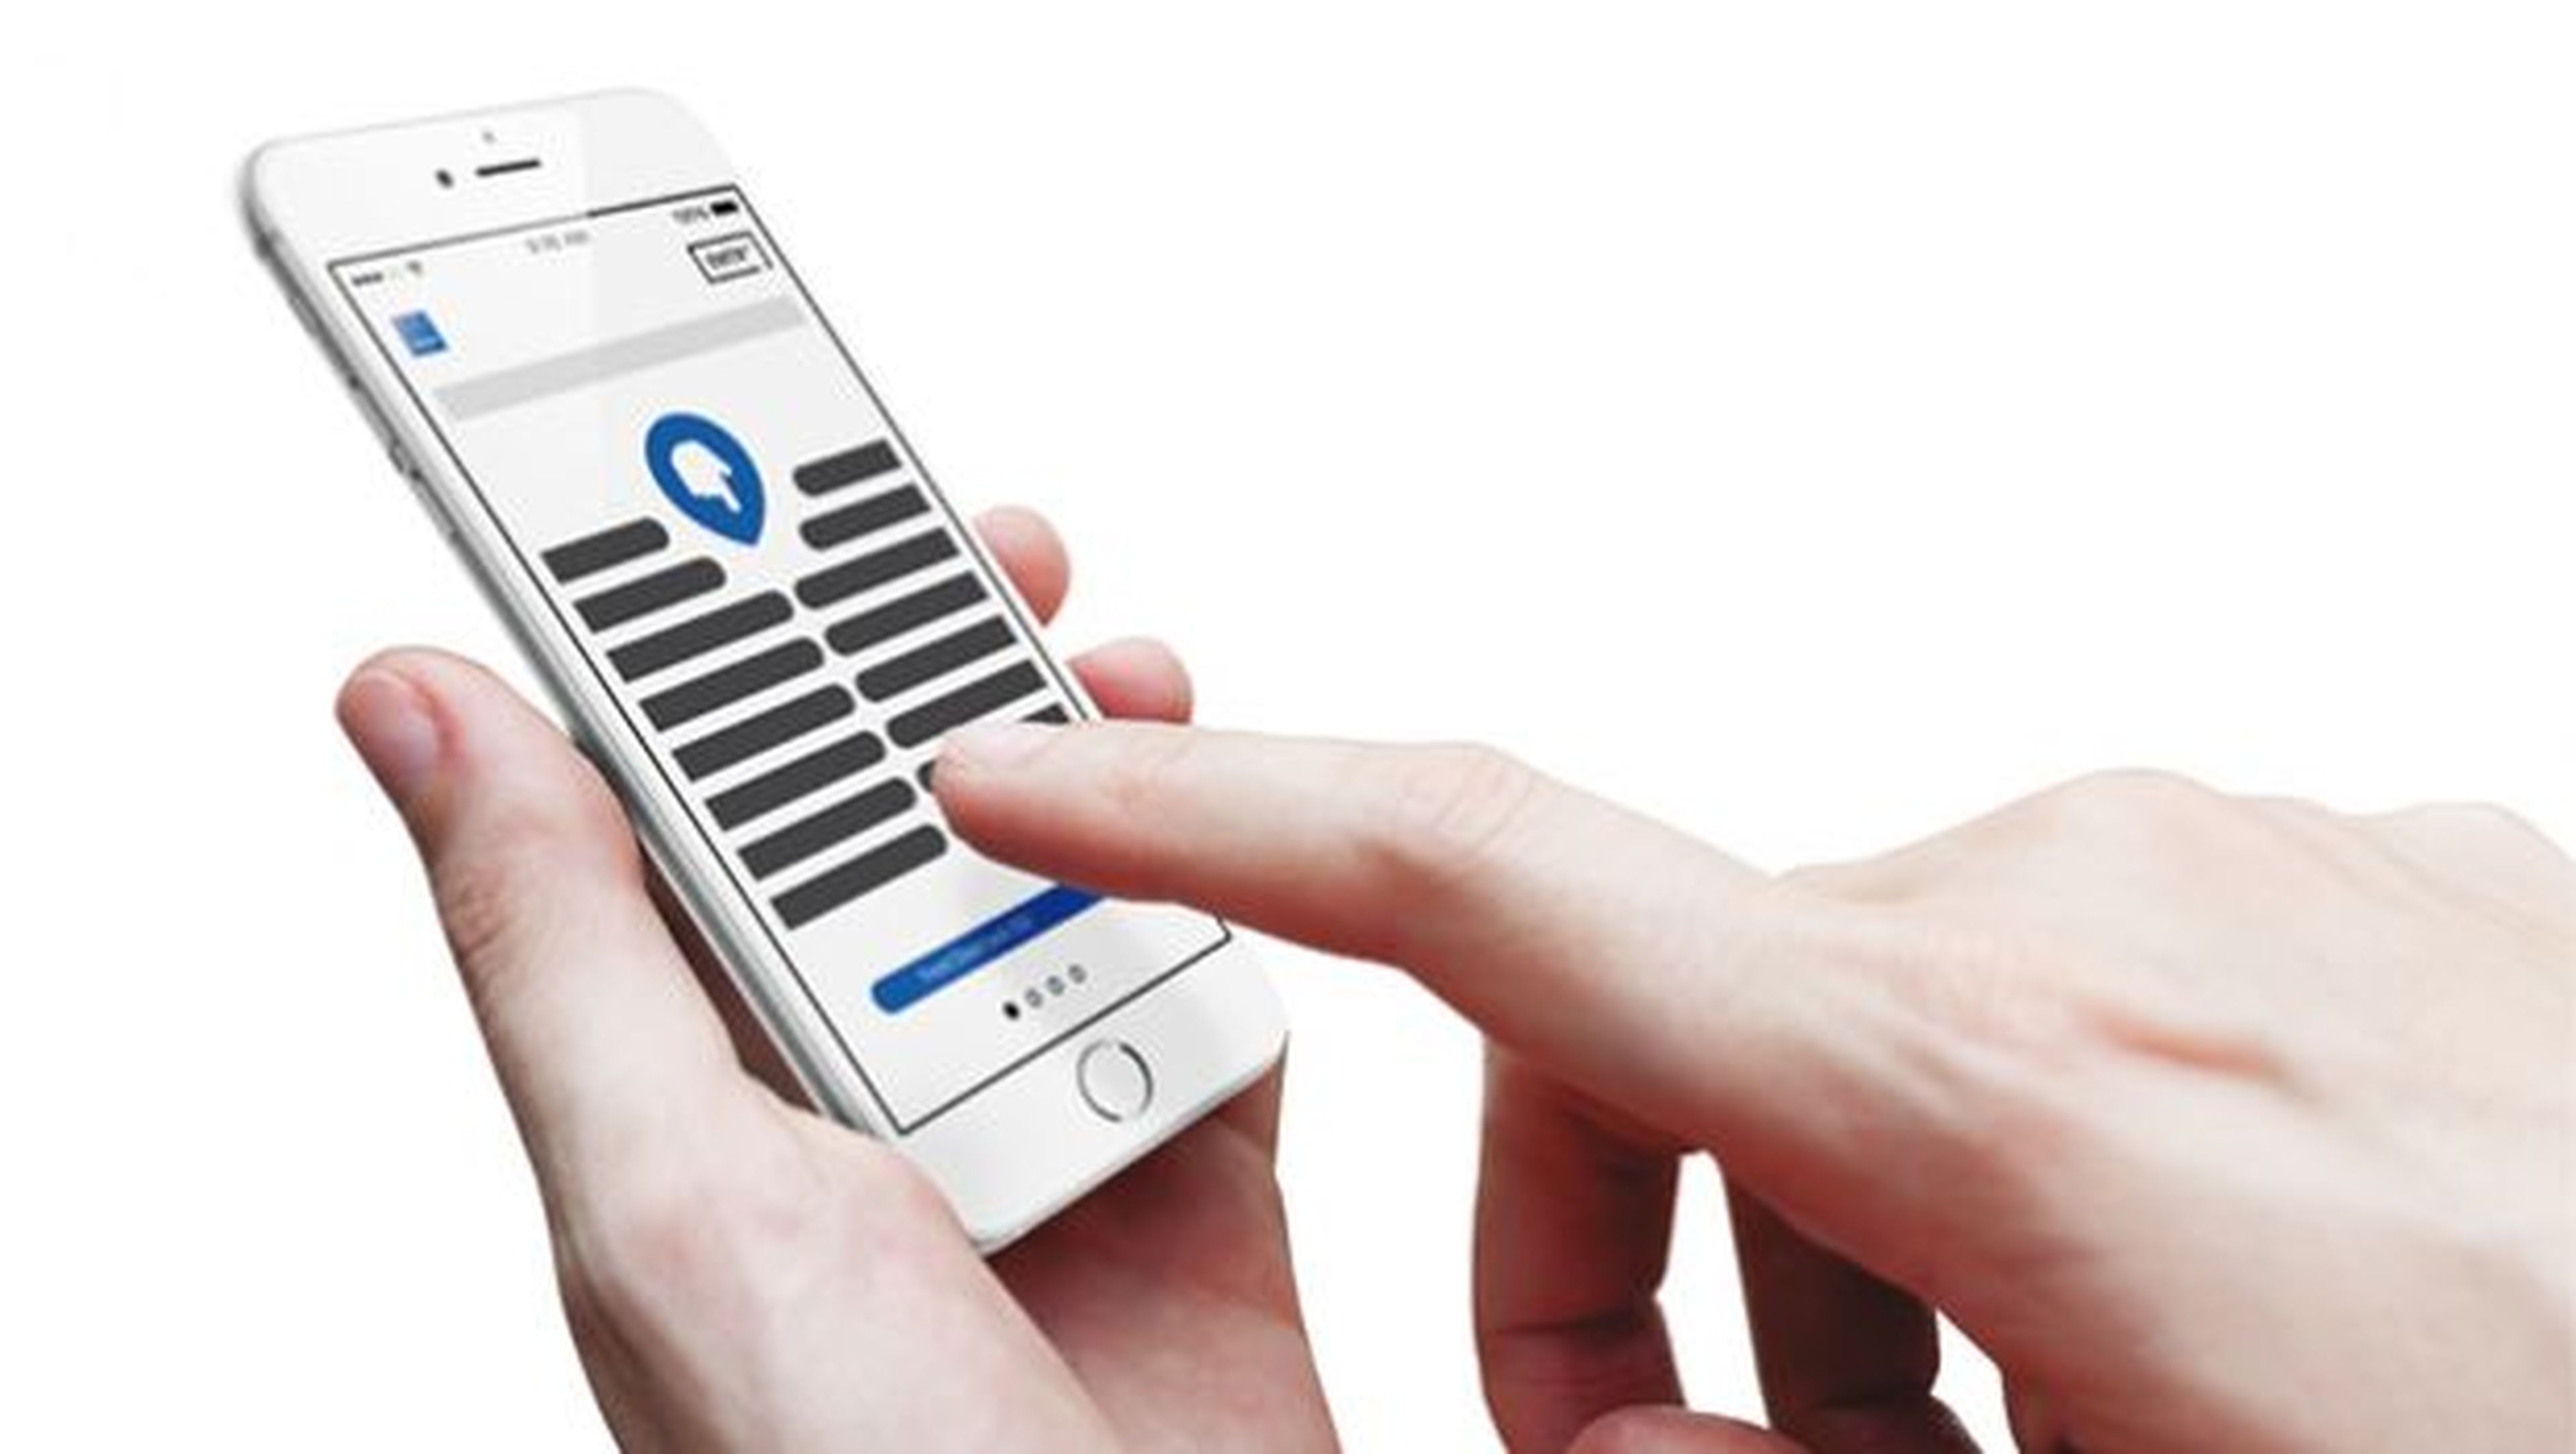 ENTR incorpora un sistema de conexión inalámbrica Bluetooth LE cifrado mediante el que se sincroniza con una app instalada en tu smartphone o tablet.